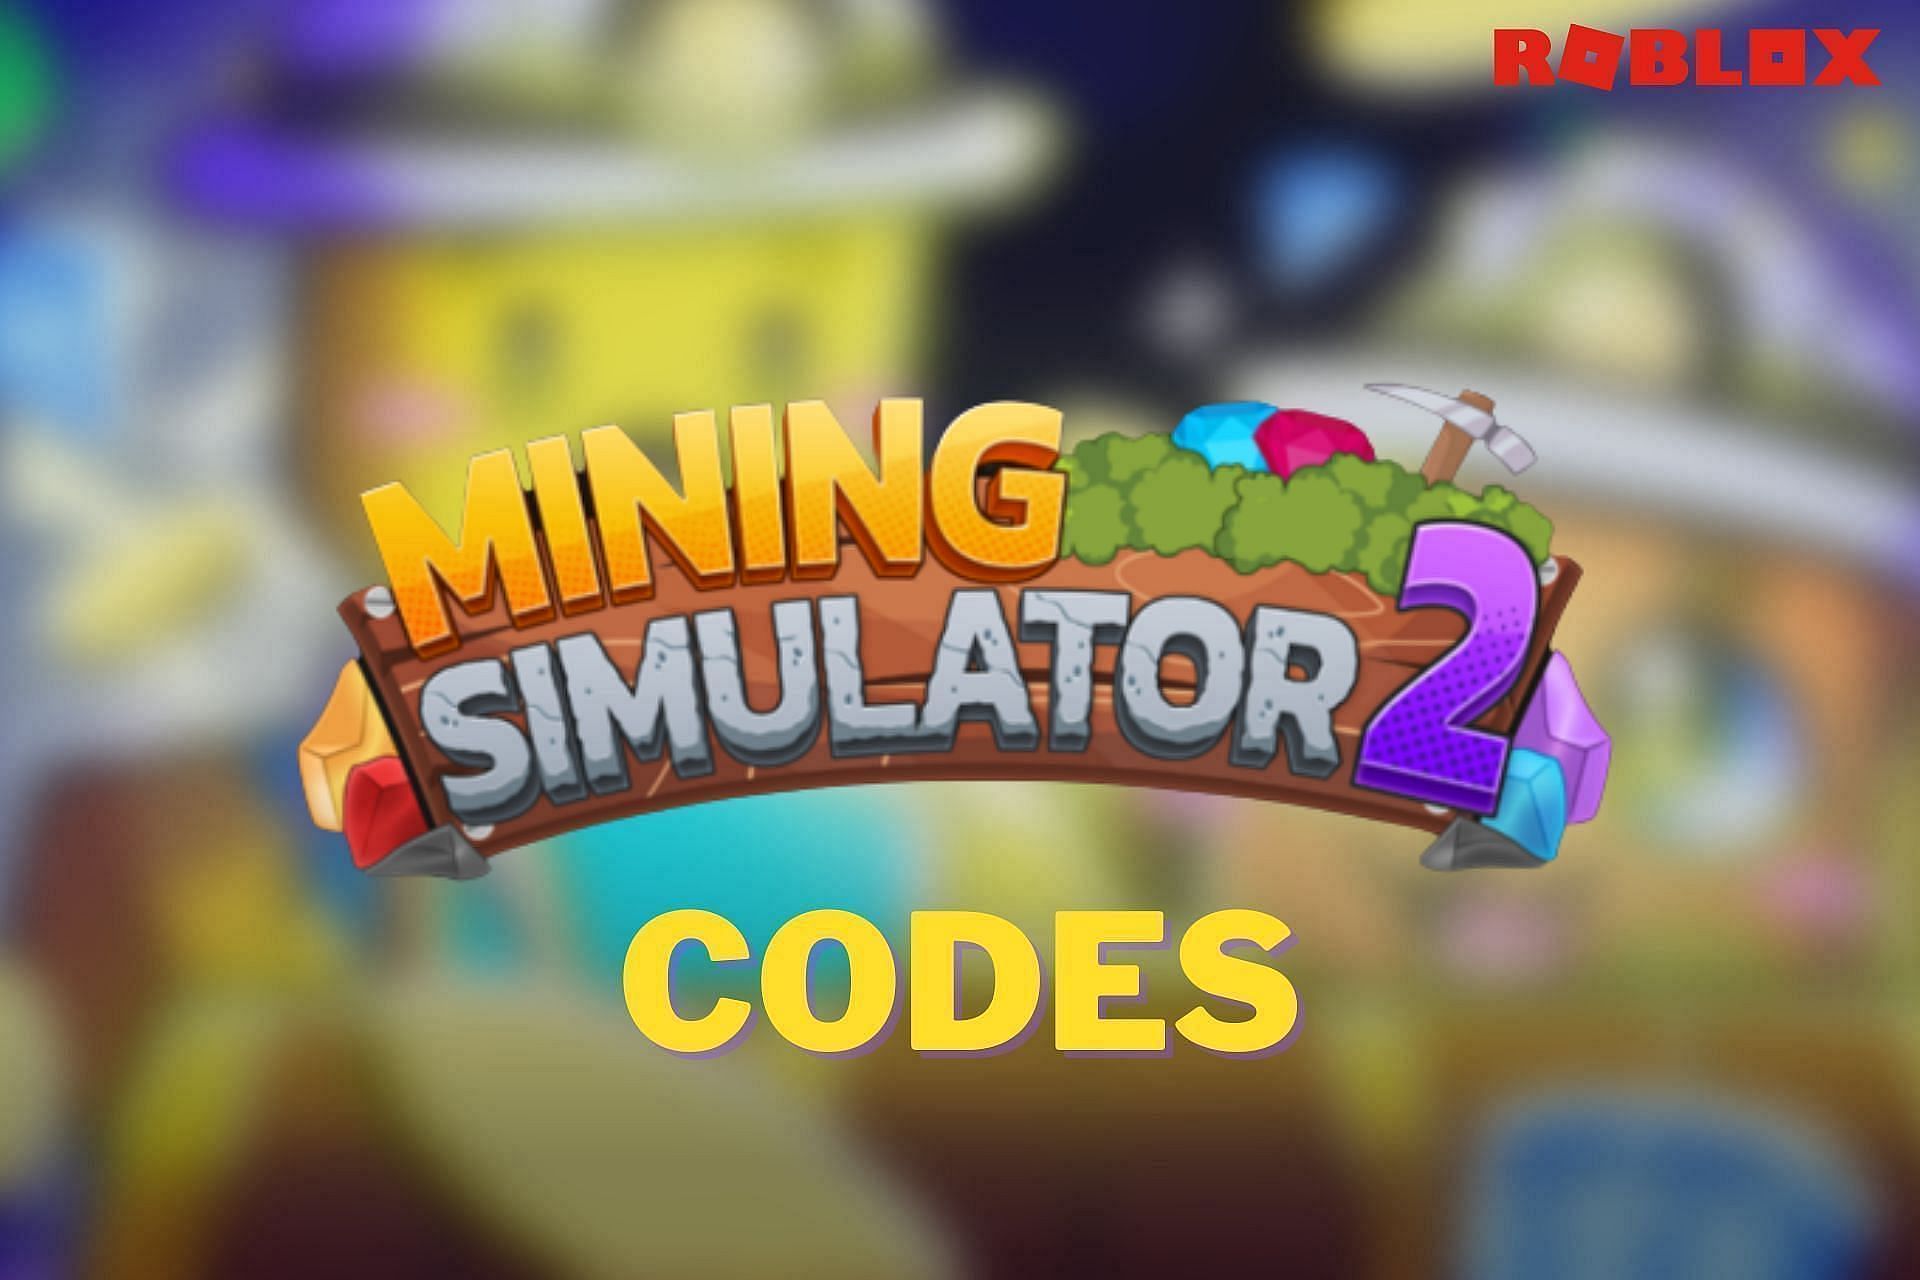 Featured image of Mining Simulator 2 codes (Image via Sportskeeda)